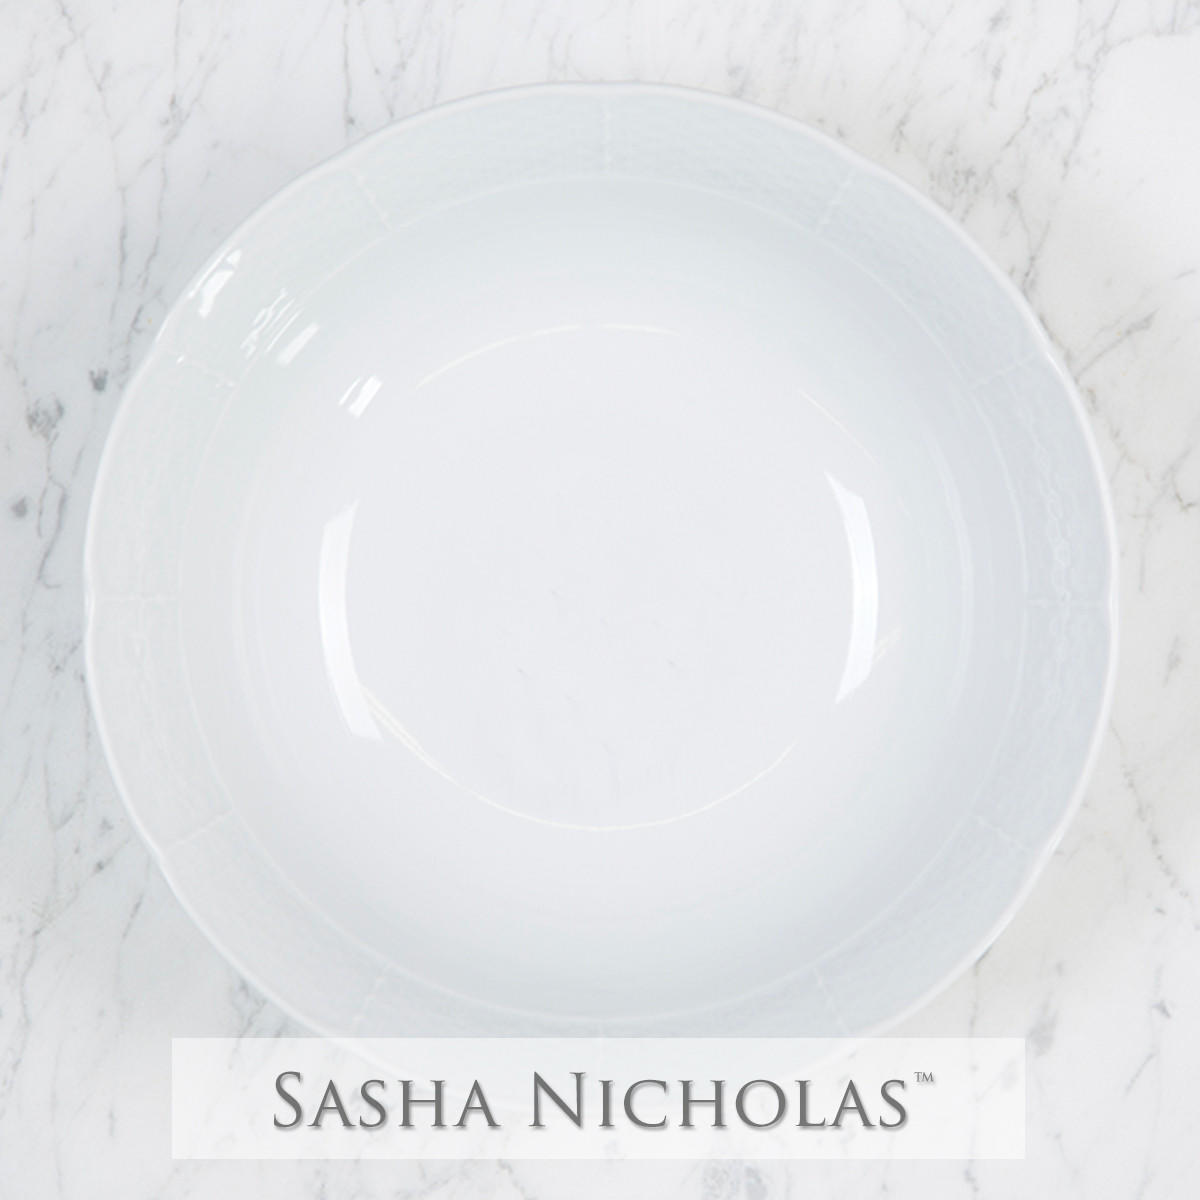 Weave Medium Serving Bowl, SNW164, Sasha Nicholas